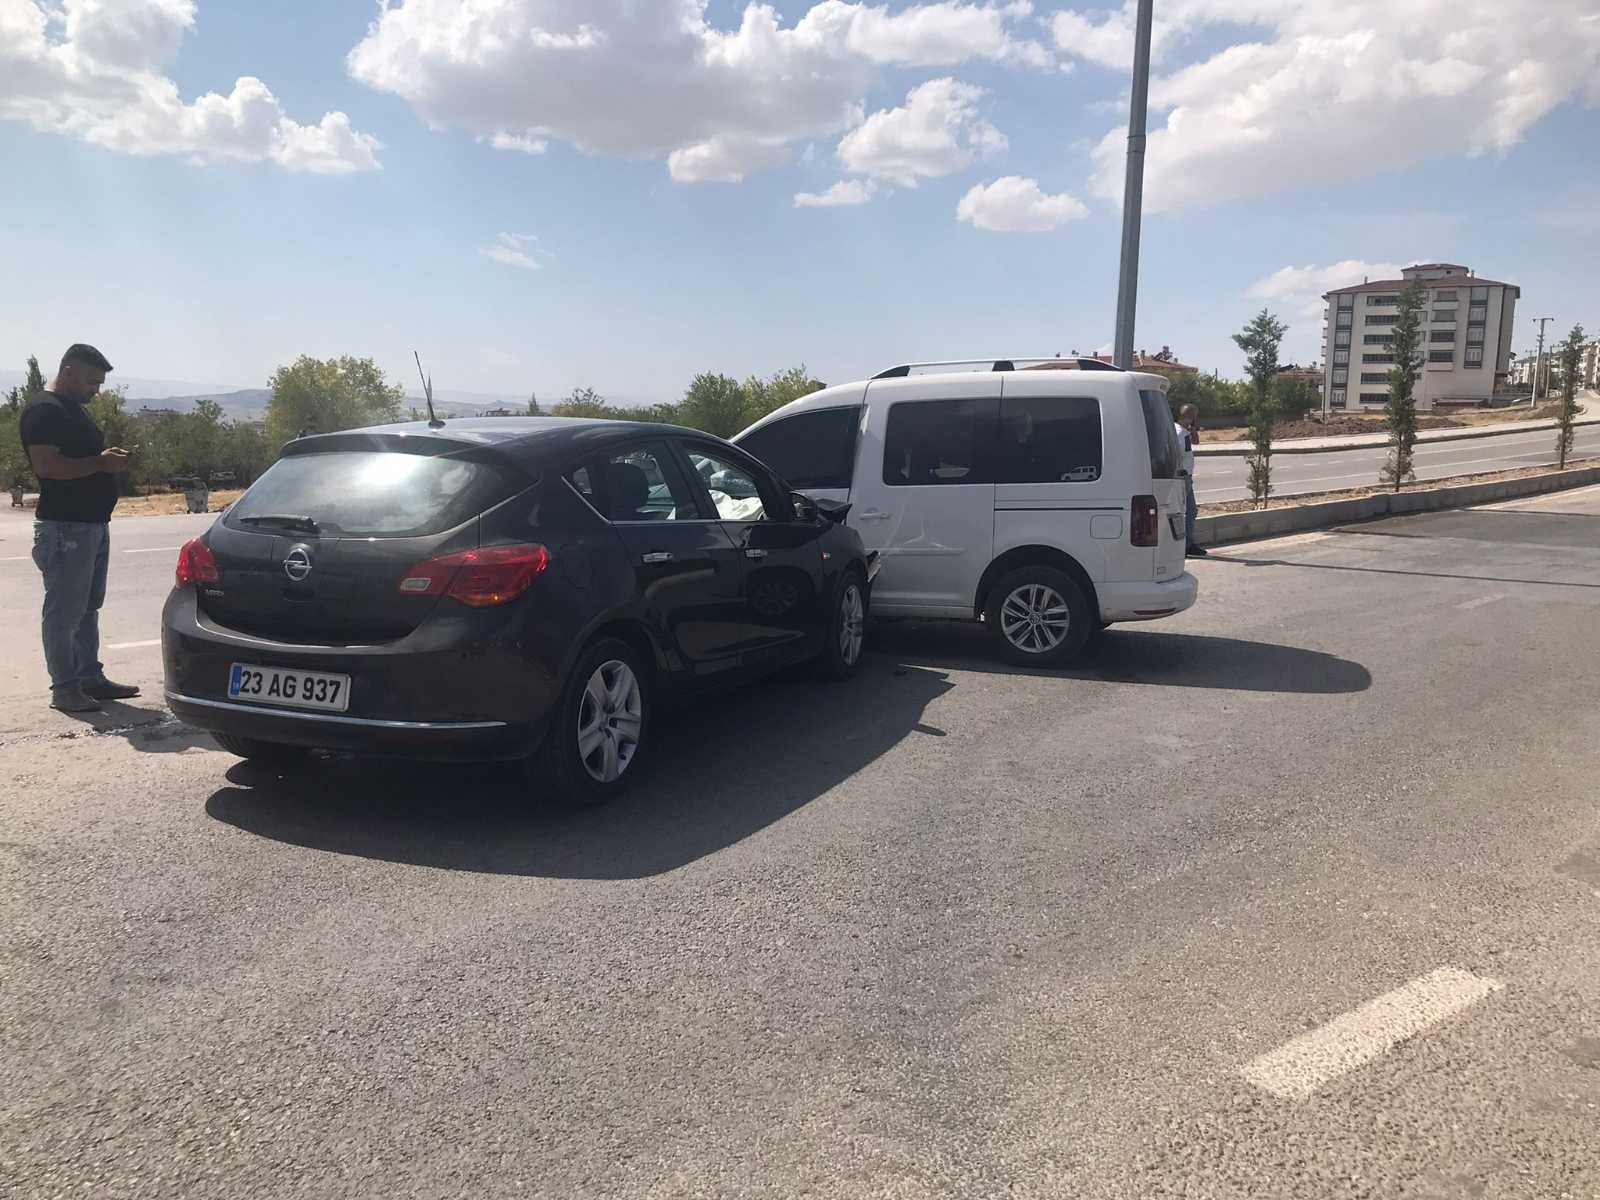 Elazığ’da trafik kazası: 1 yaralı #elazig